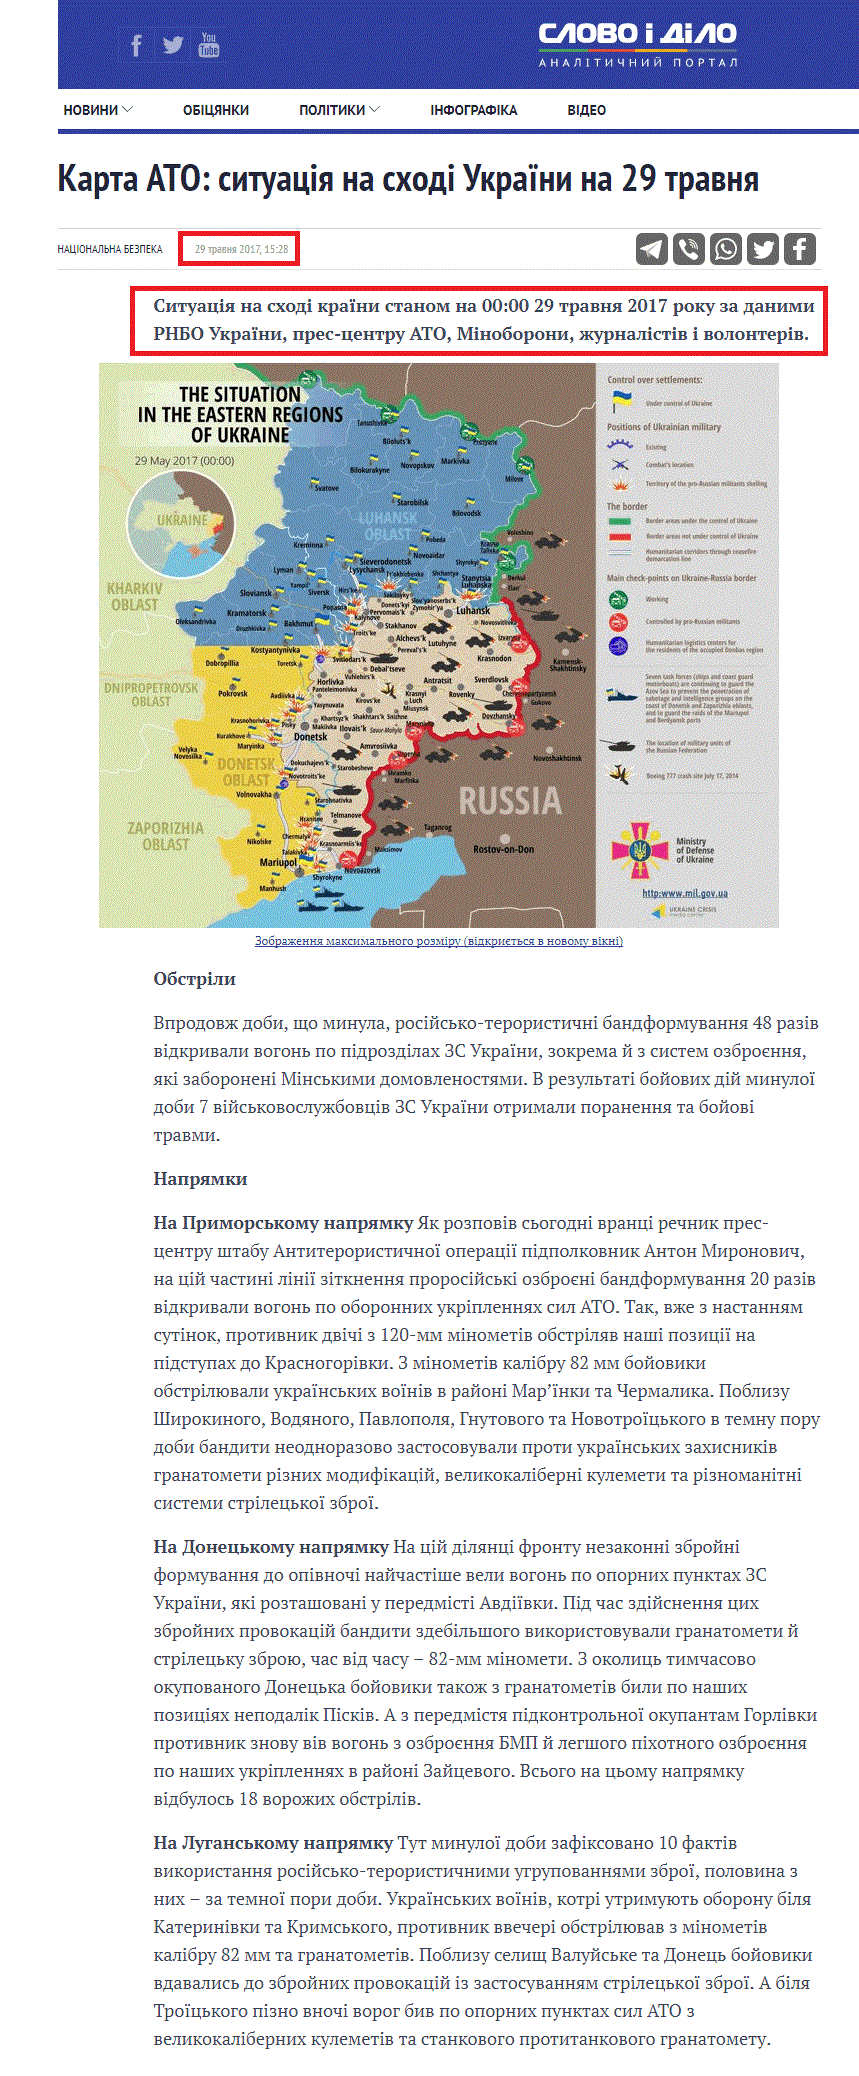 https://www.slovoidilo.ua/2017/05/29/karta/karta-ato-sytuacziya-sxodi-ukrayiny-29-travnya